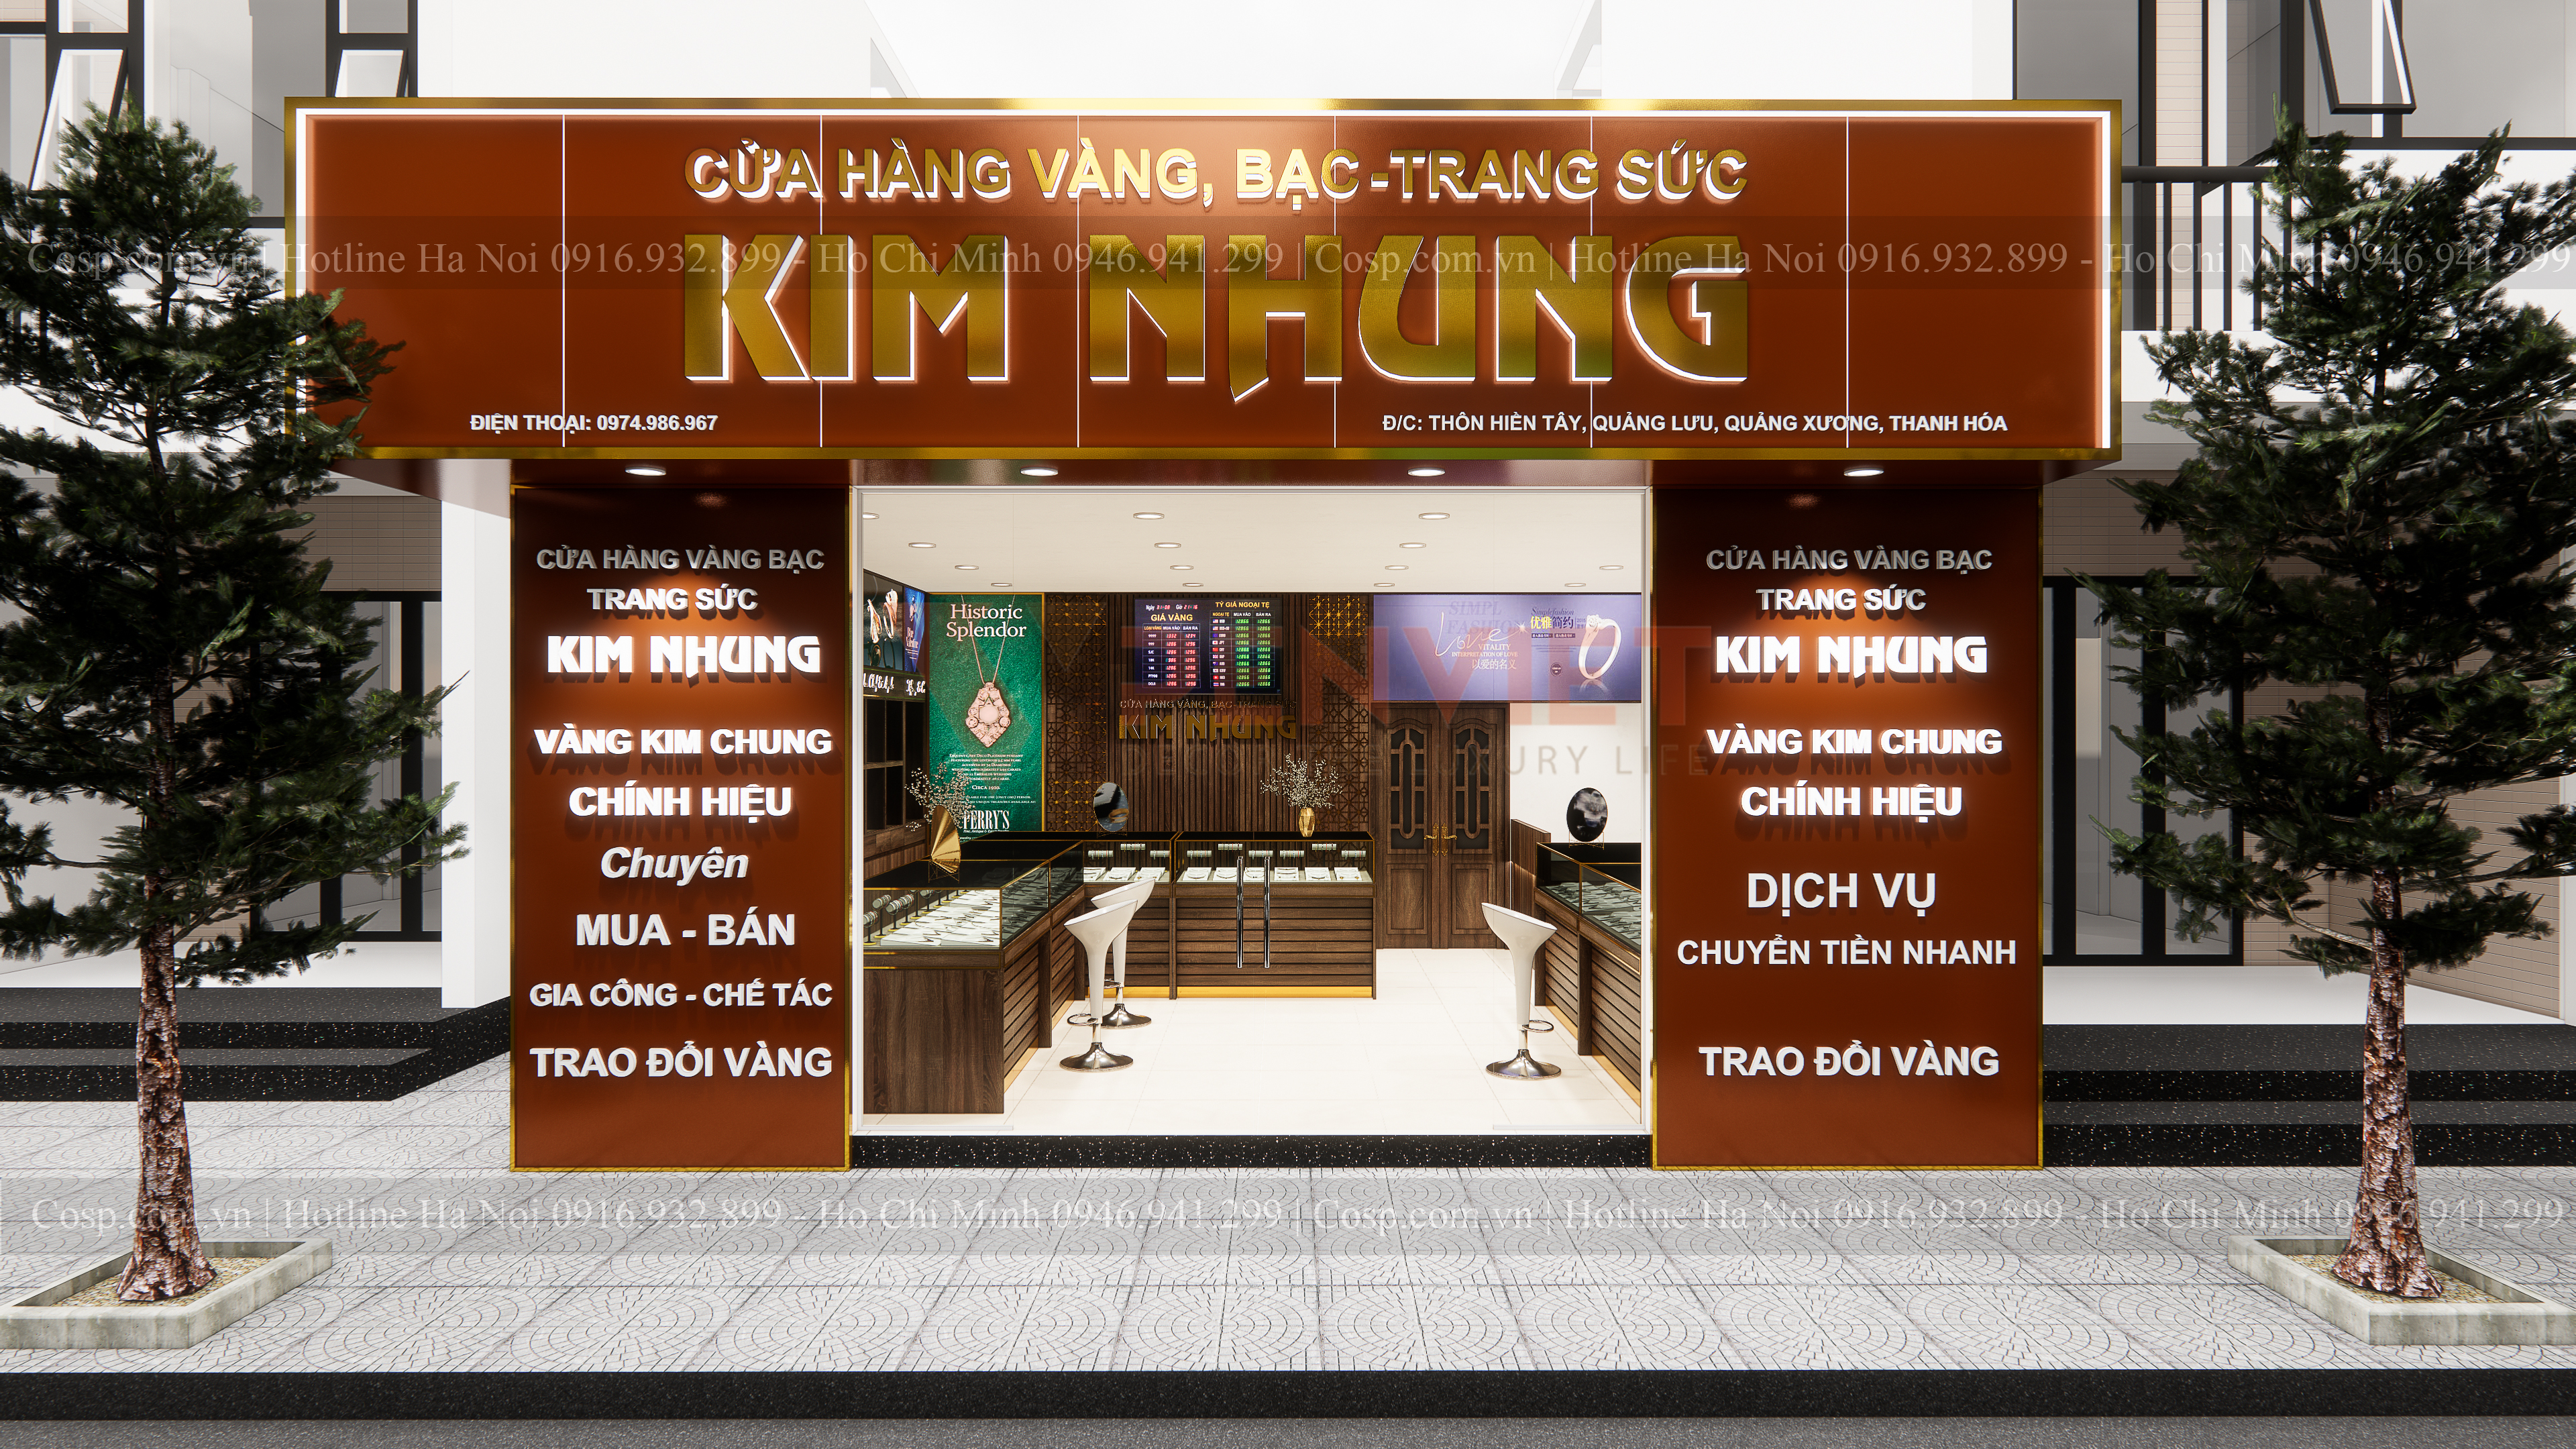 Thiết kế cửa hàng vàng bạc trang sức Kim Nhung